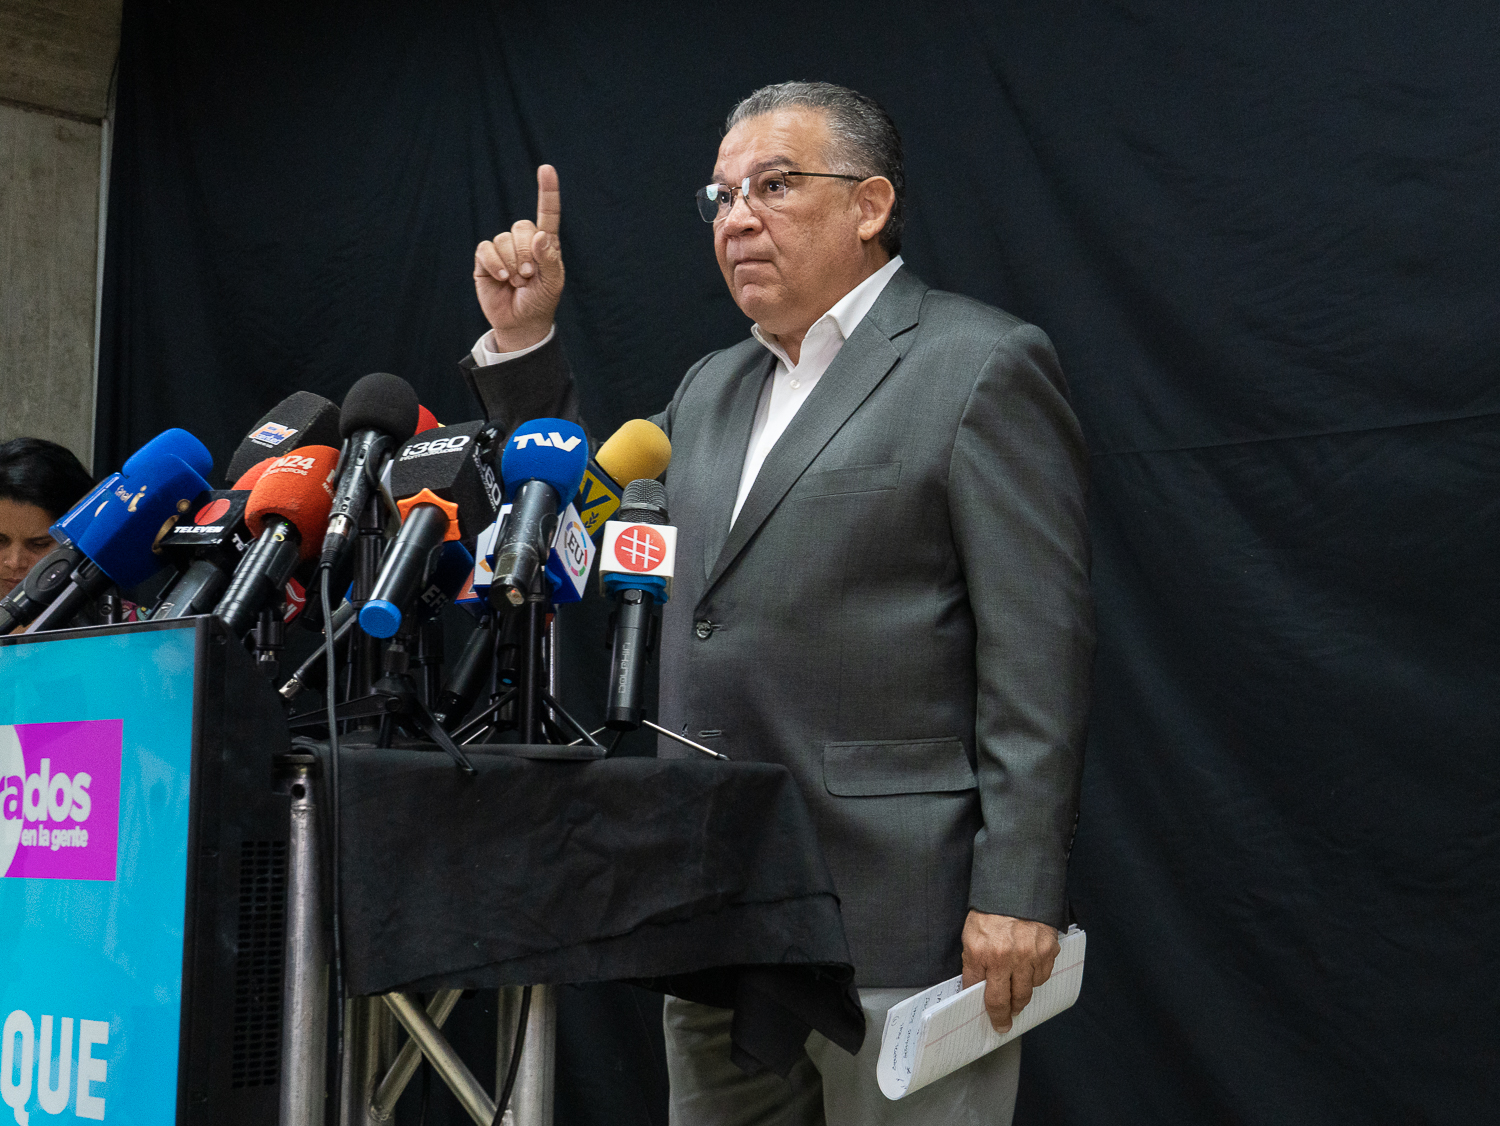 Candidato Enrique Márquez se solidariza con Vente Venezuela por detención de dirigentes